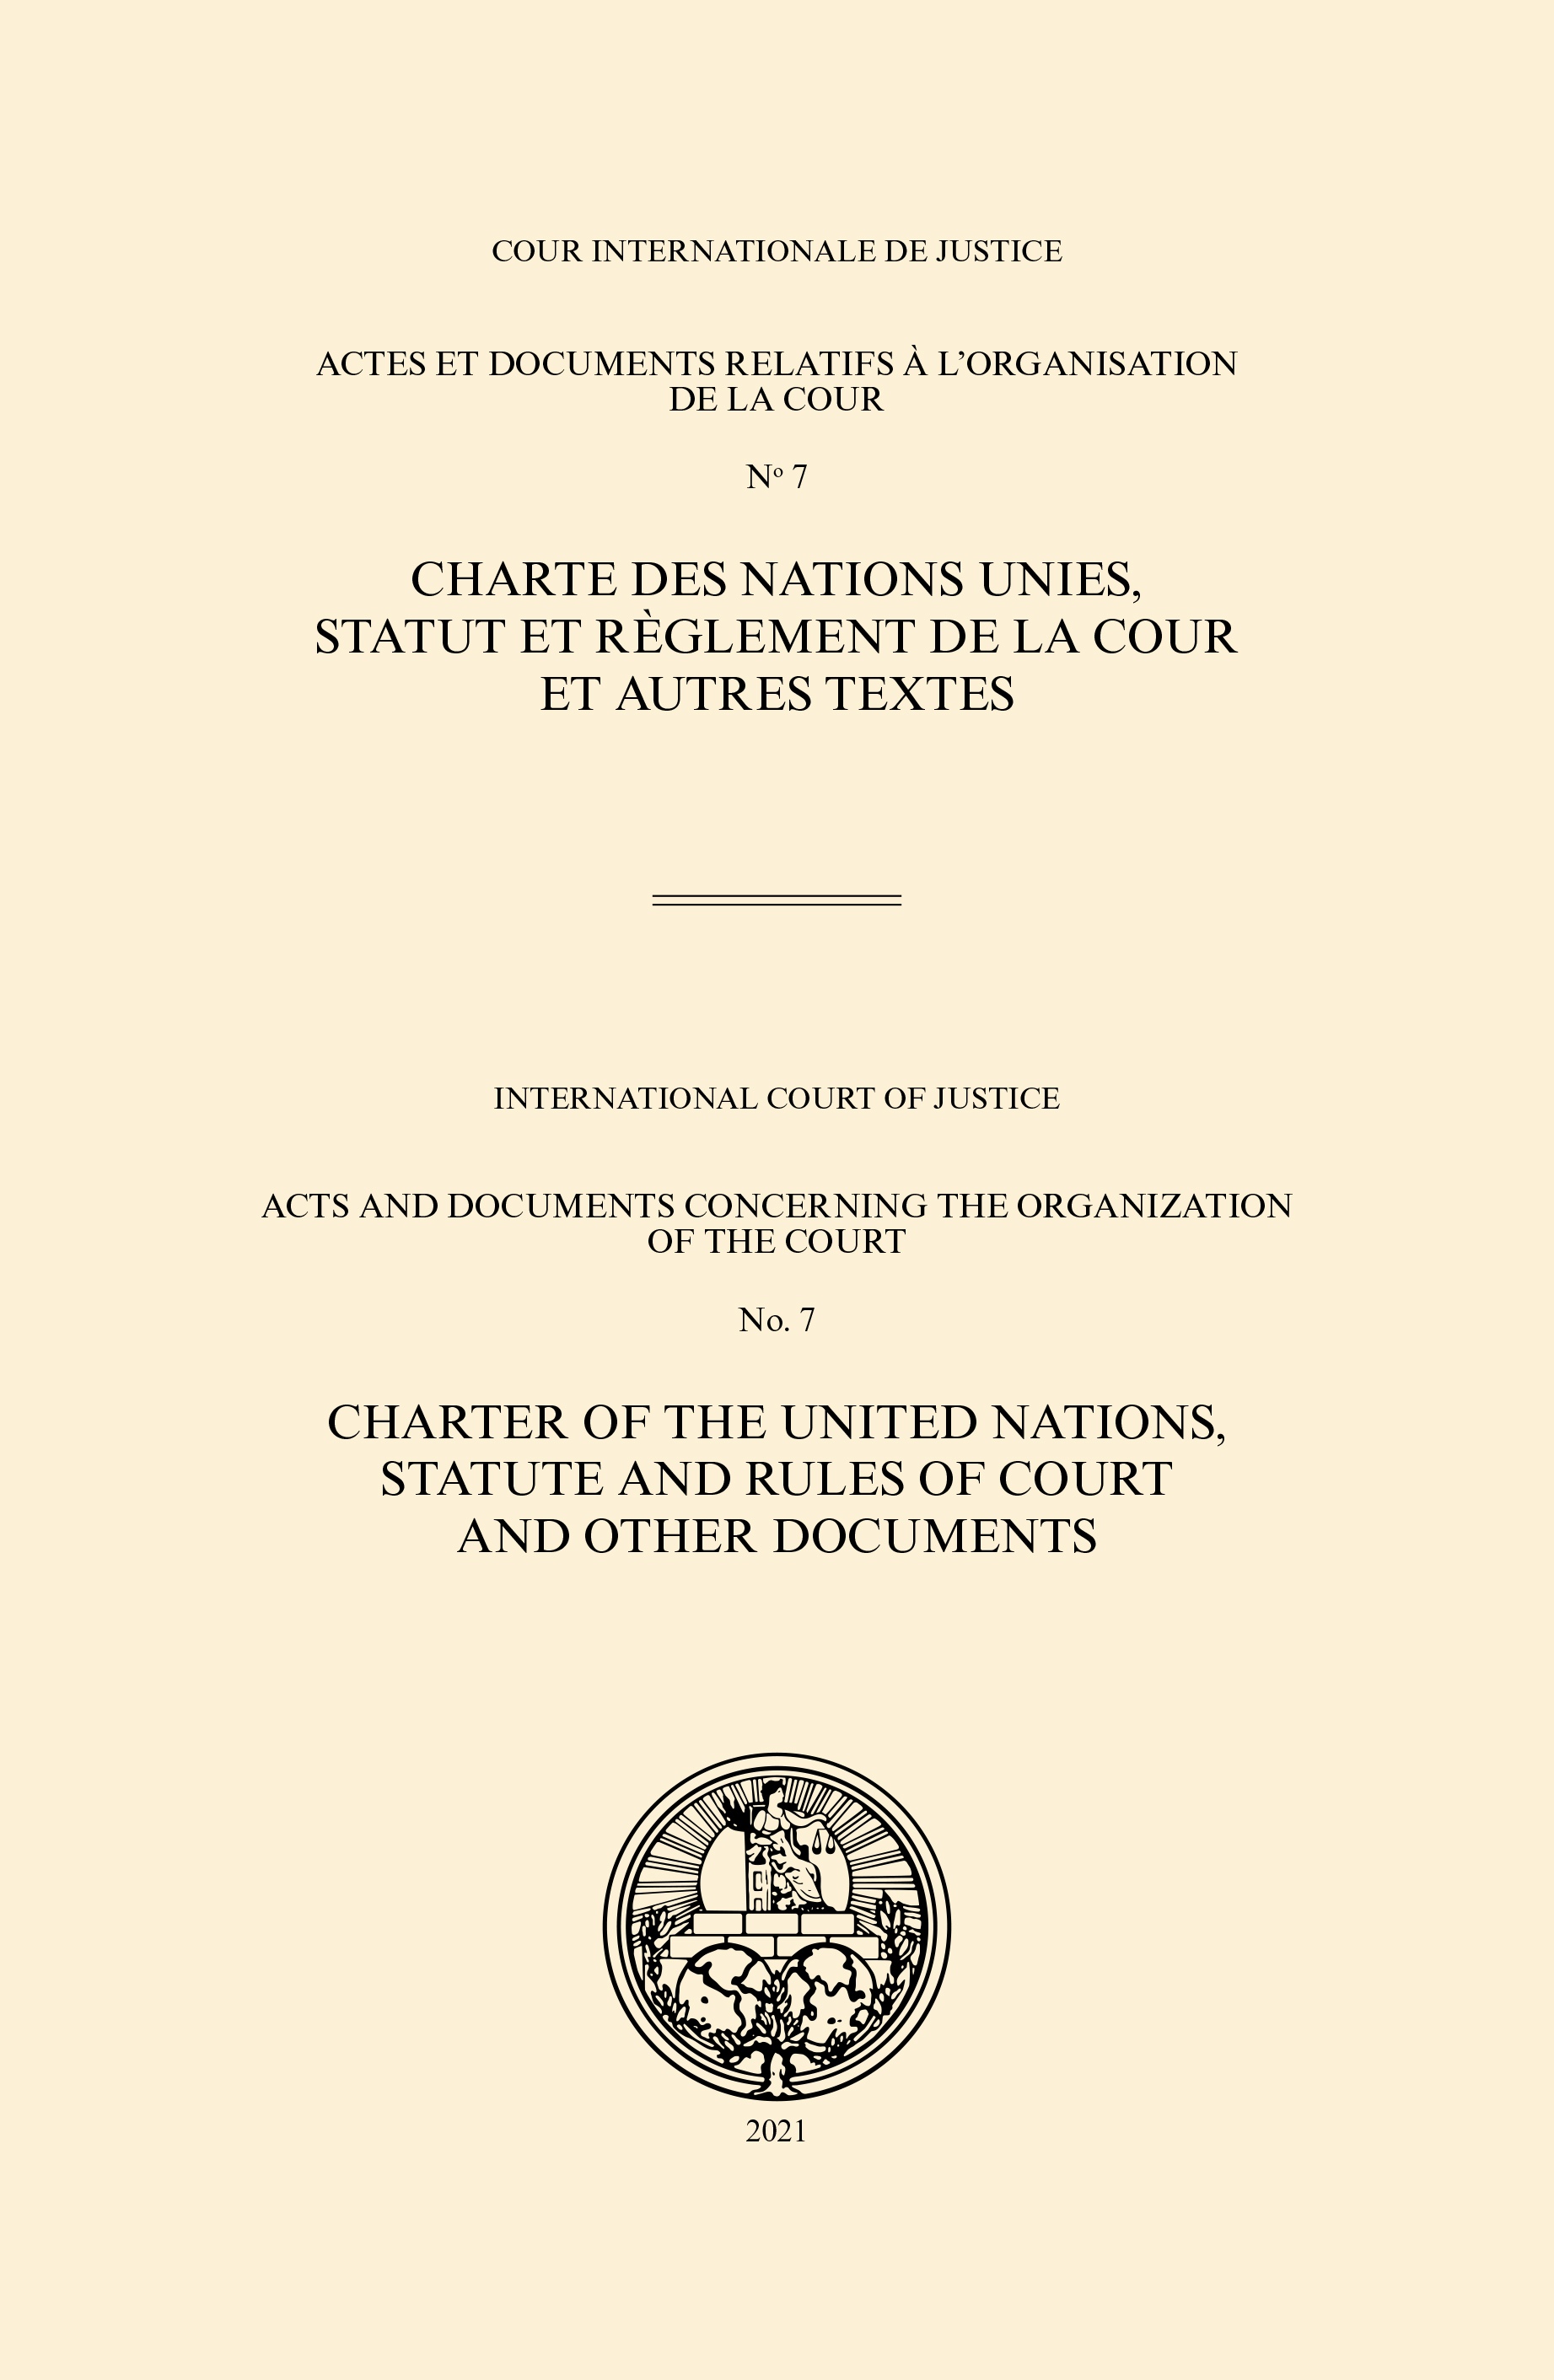 image of Actes et documents relatifs à l'organisation de la Cour no 7